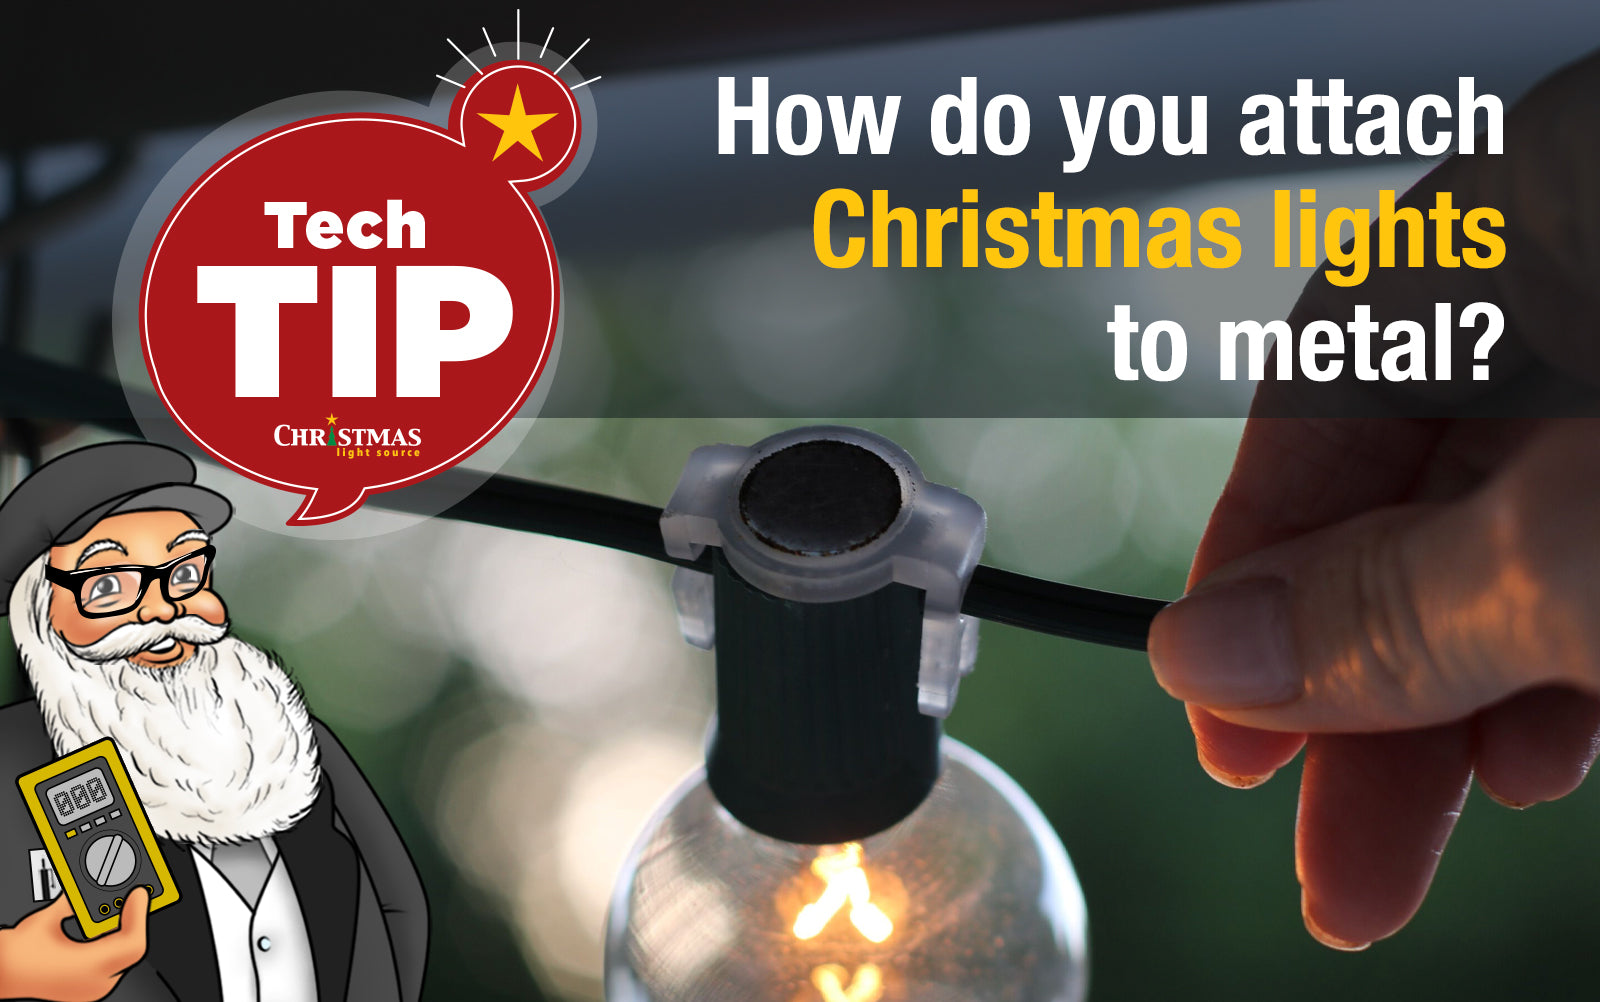 How do you attach Christmas lights to metal?